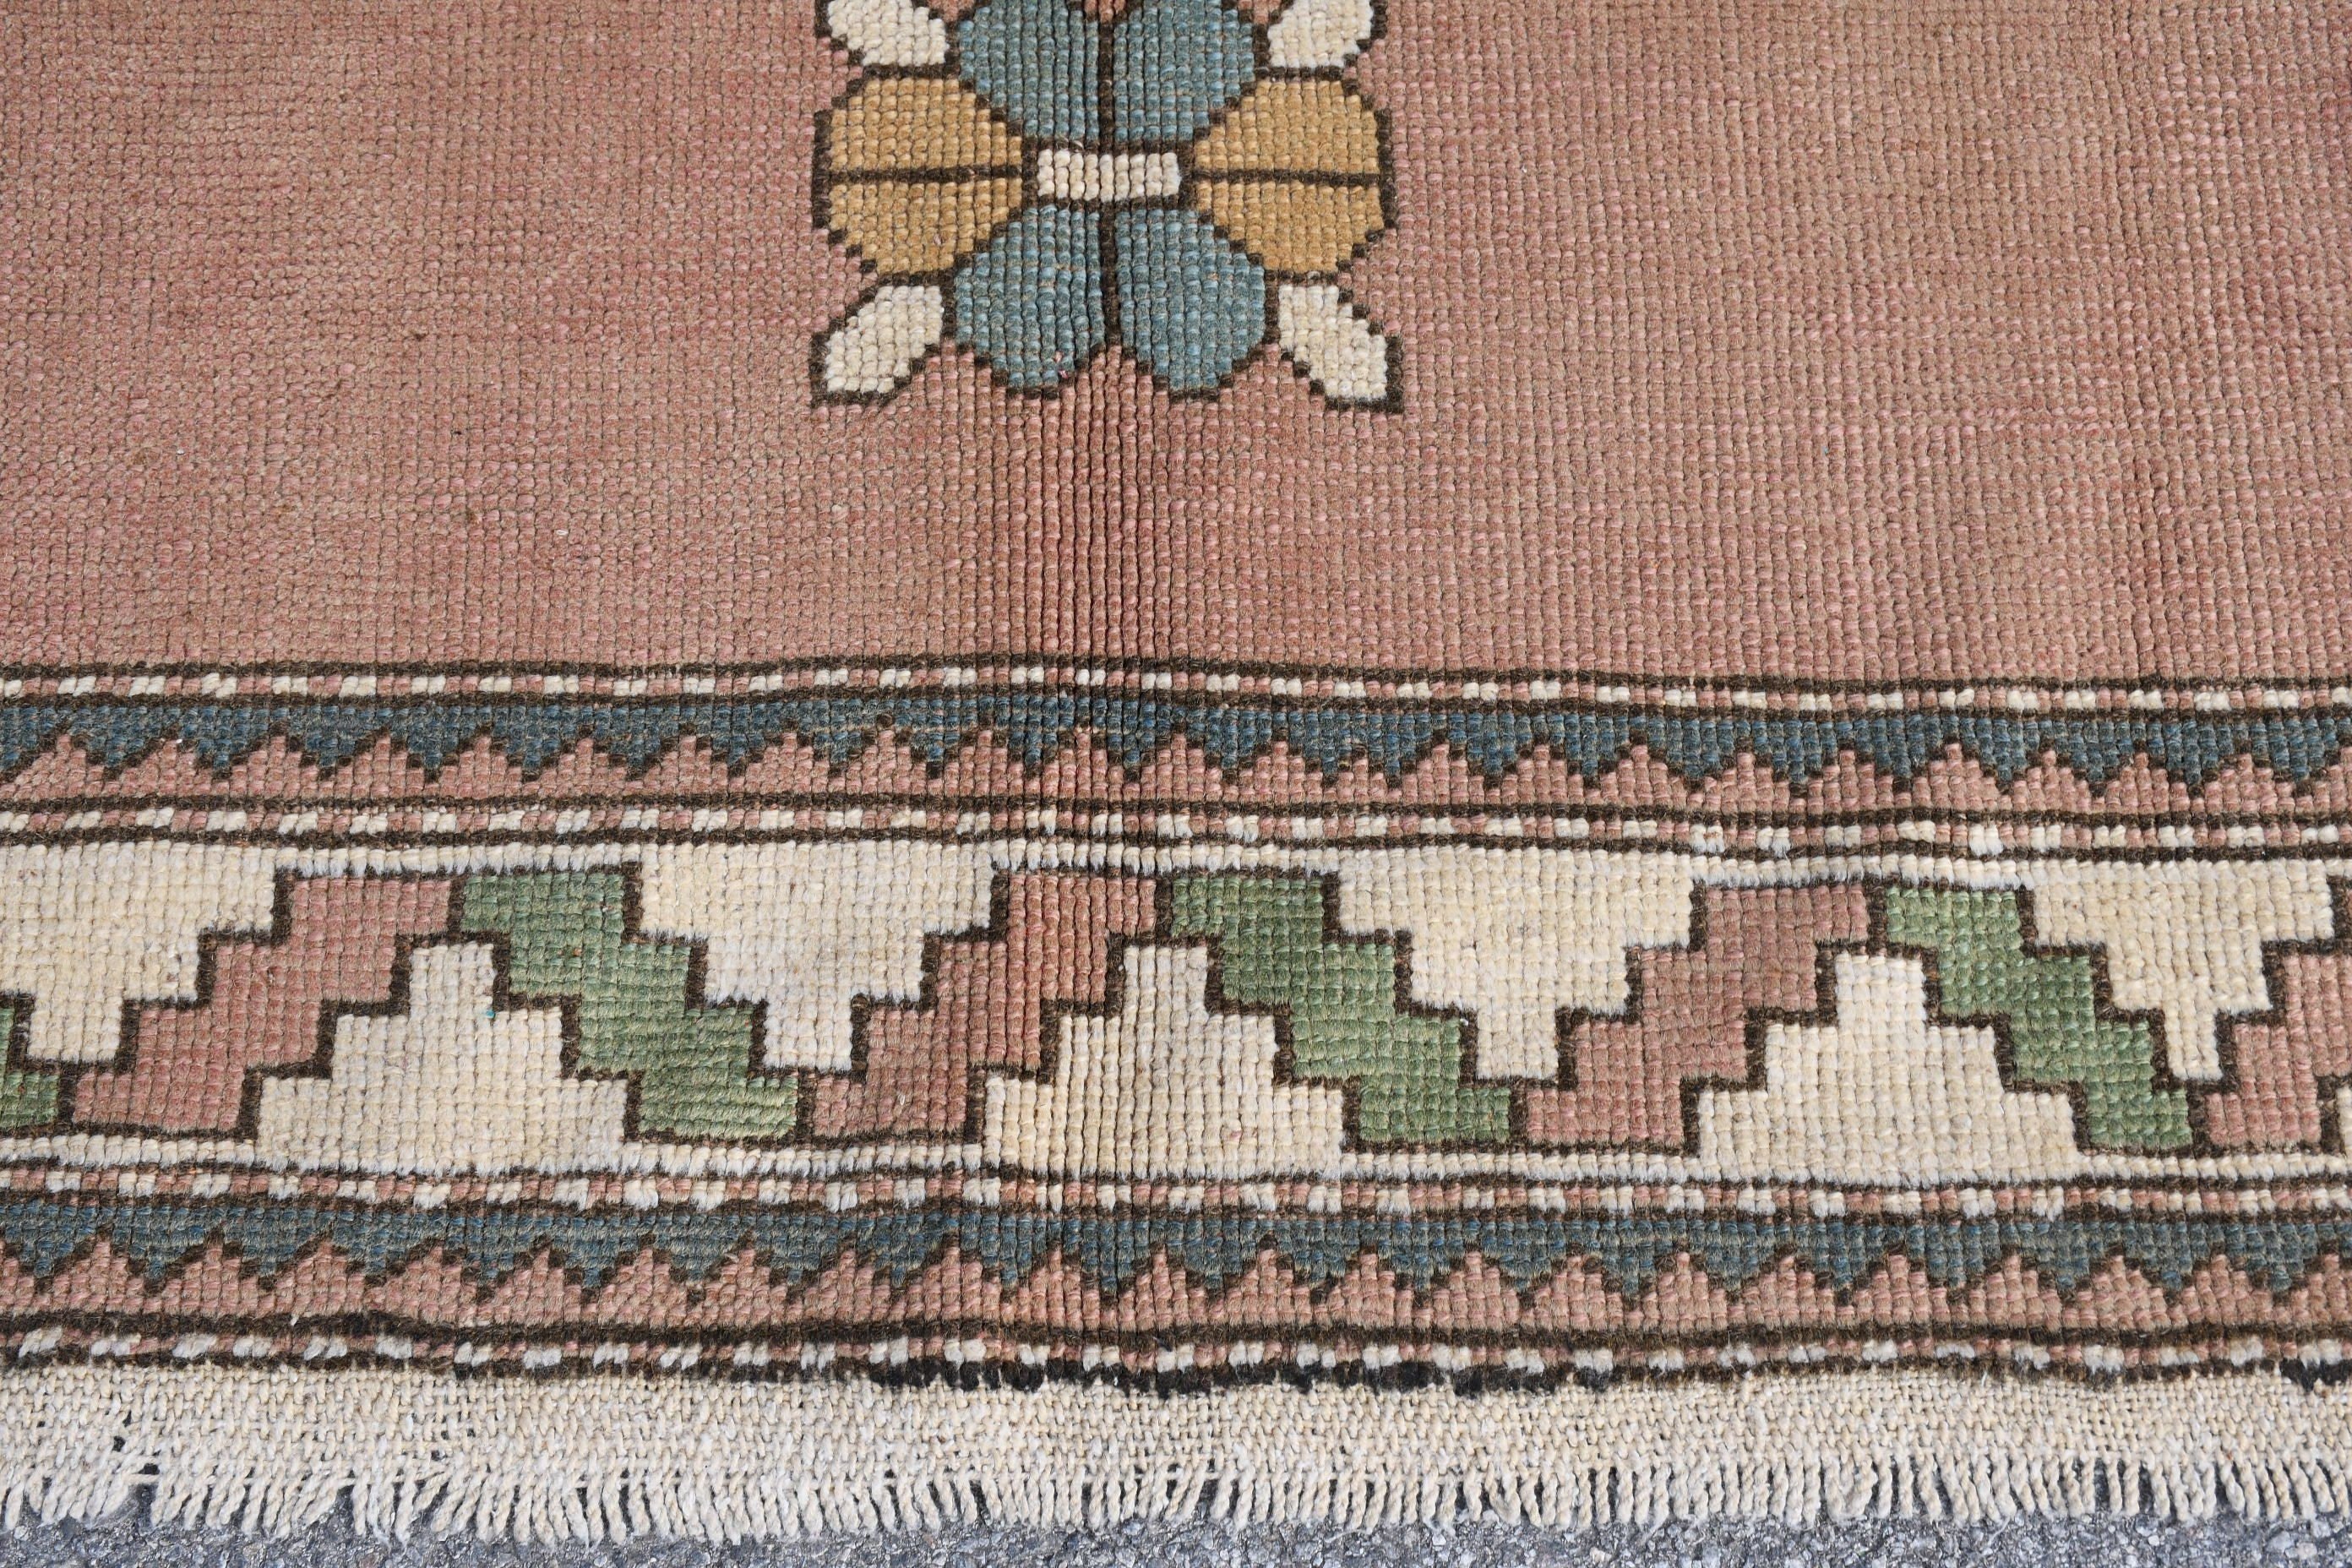 Turkish Rug, Oriental Rugs, Custom Rug, Bedroom Rug, Salon Rugs, 6.9x9.6 ft Large Rug, Vintage Rugs, Pink Bedroom Rugs, Living Room Rug